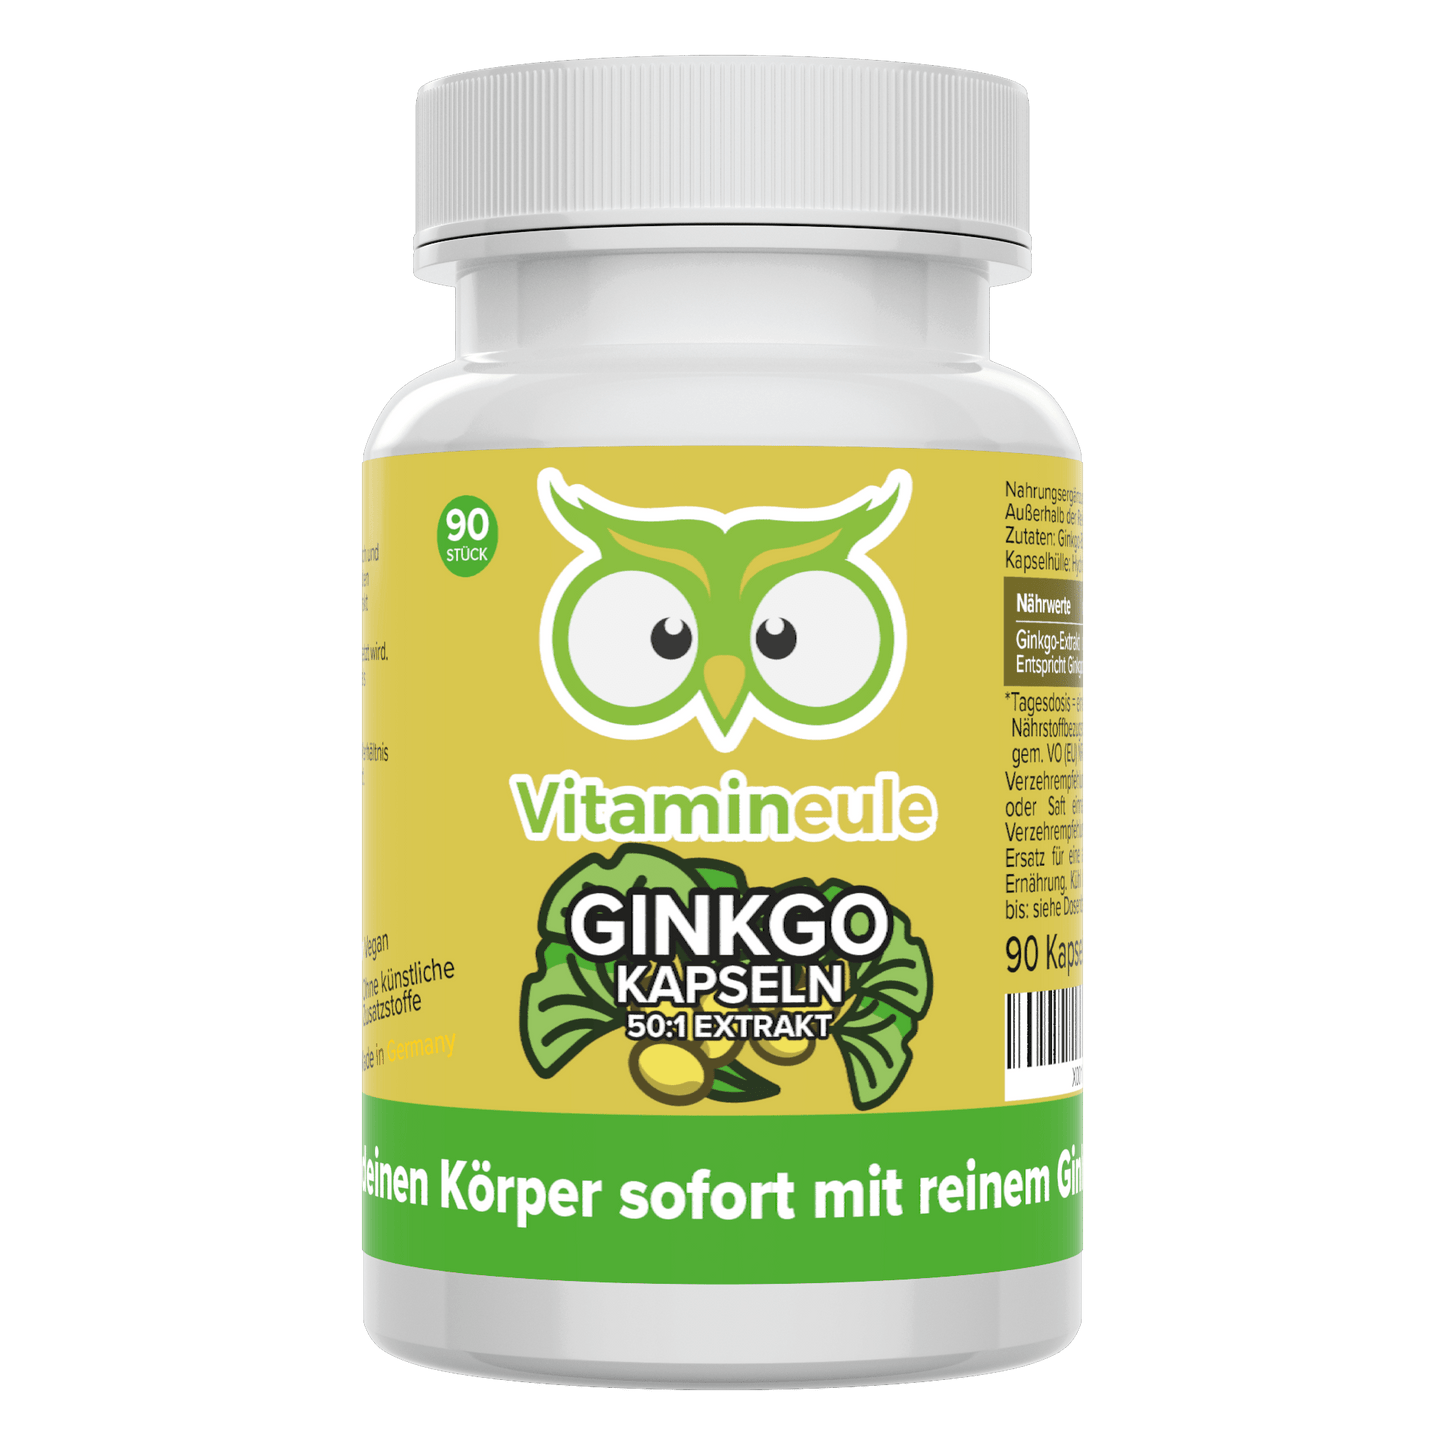 Ginkgo capsules